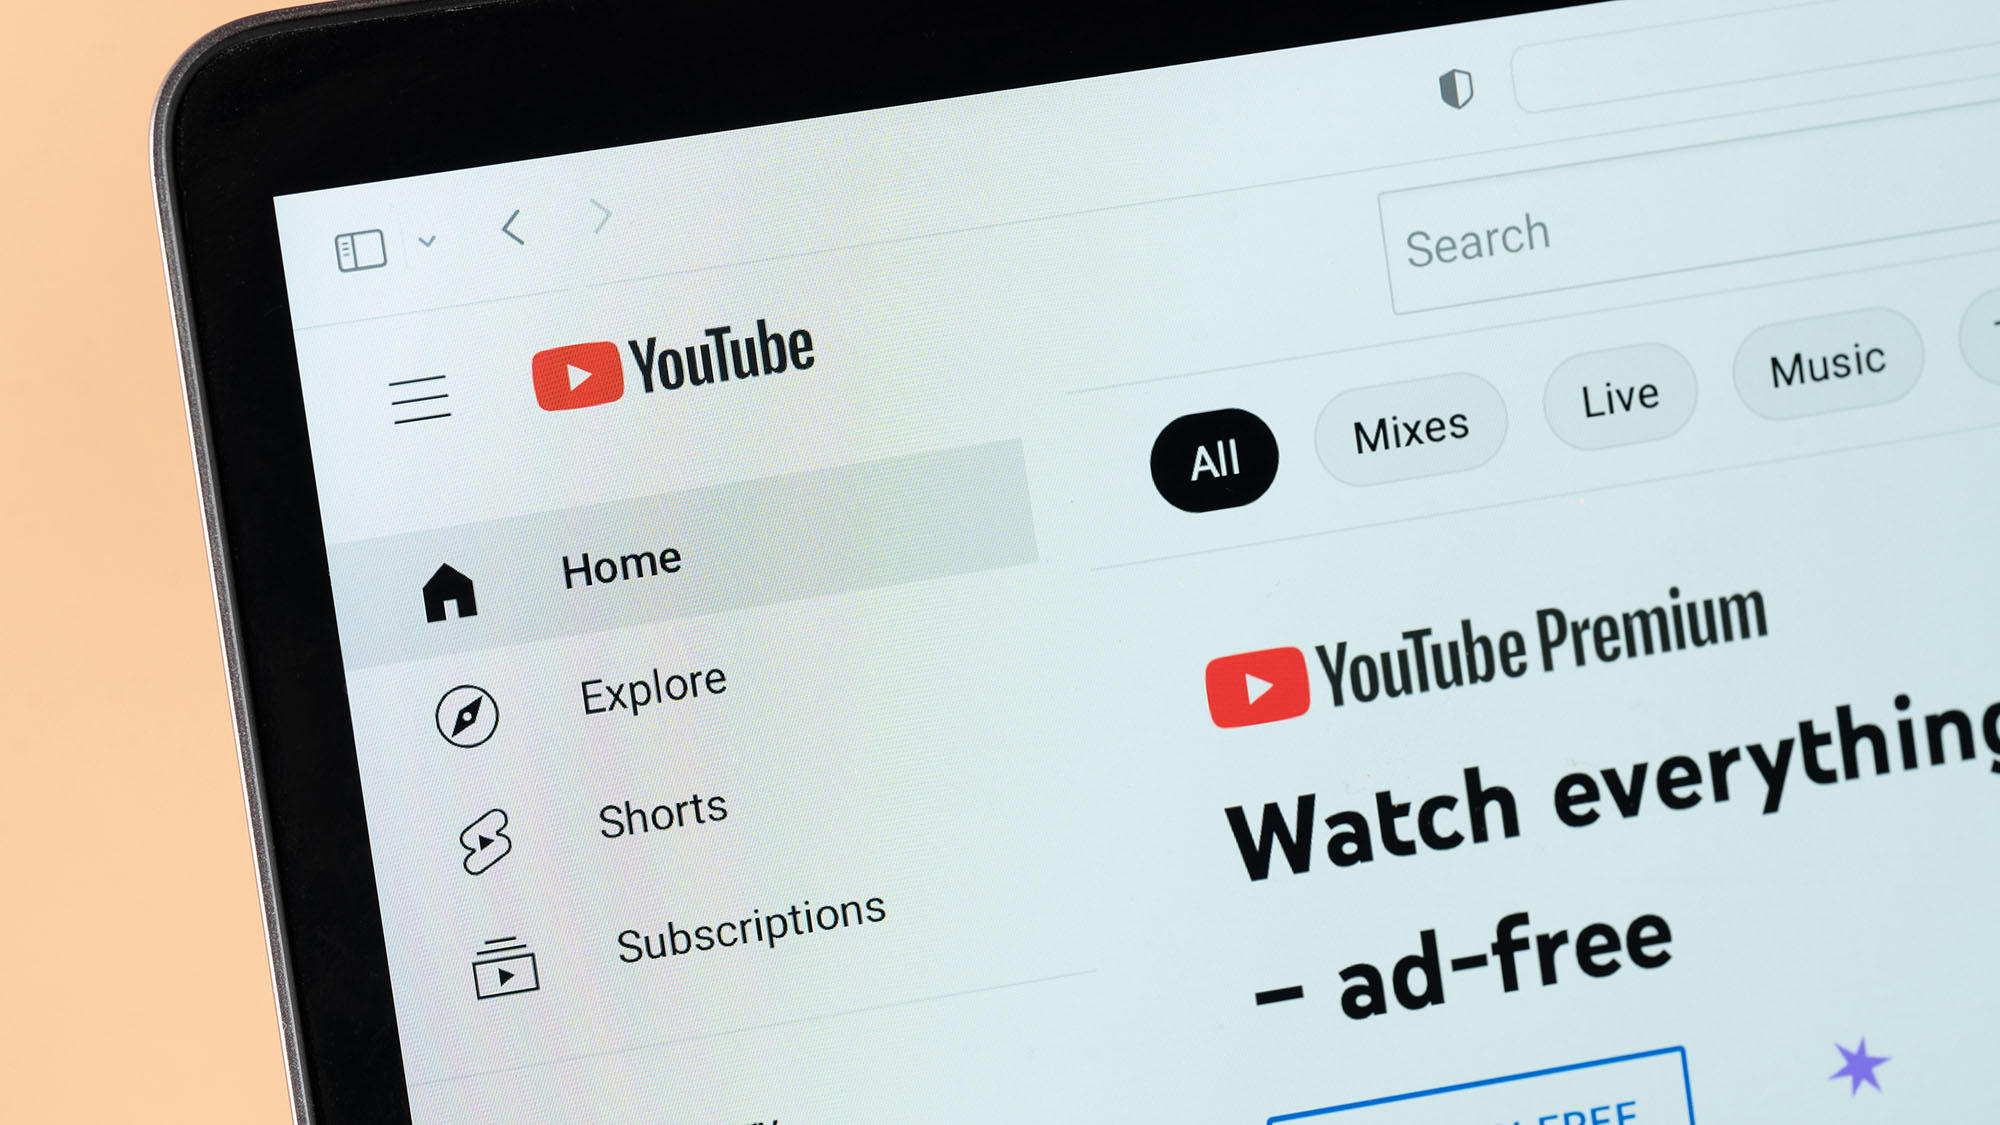 Подписчики YouTube Premium только что получили доступ к 5 новым функциям